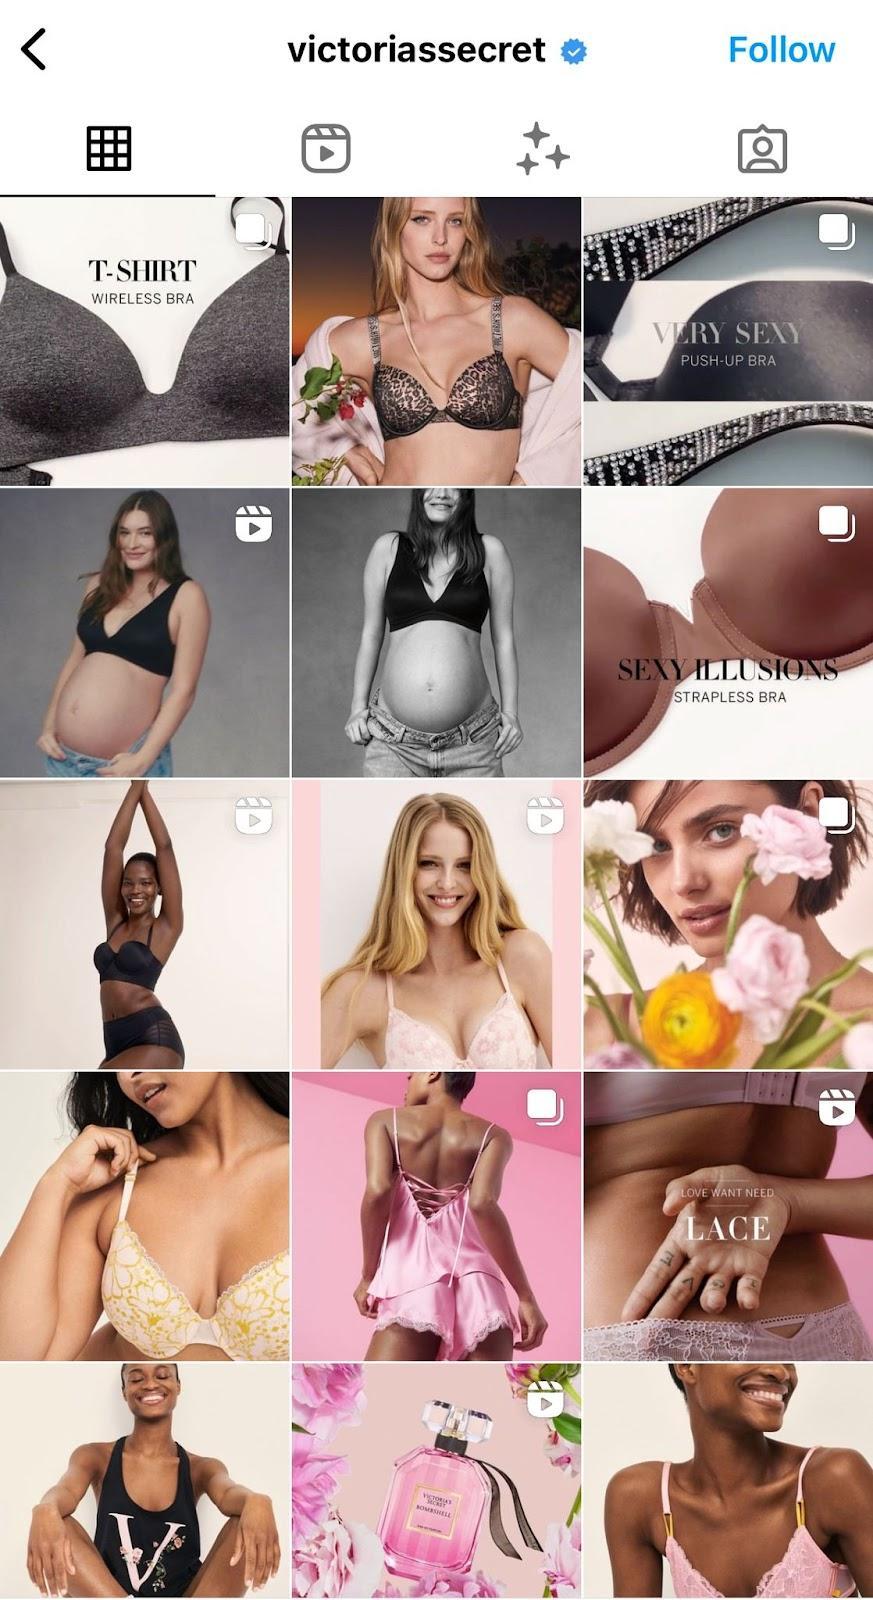 Il feed Instagram di Victoria Secret